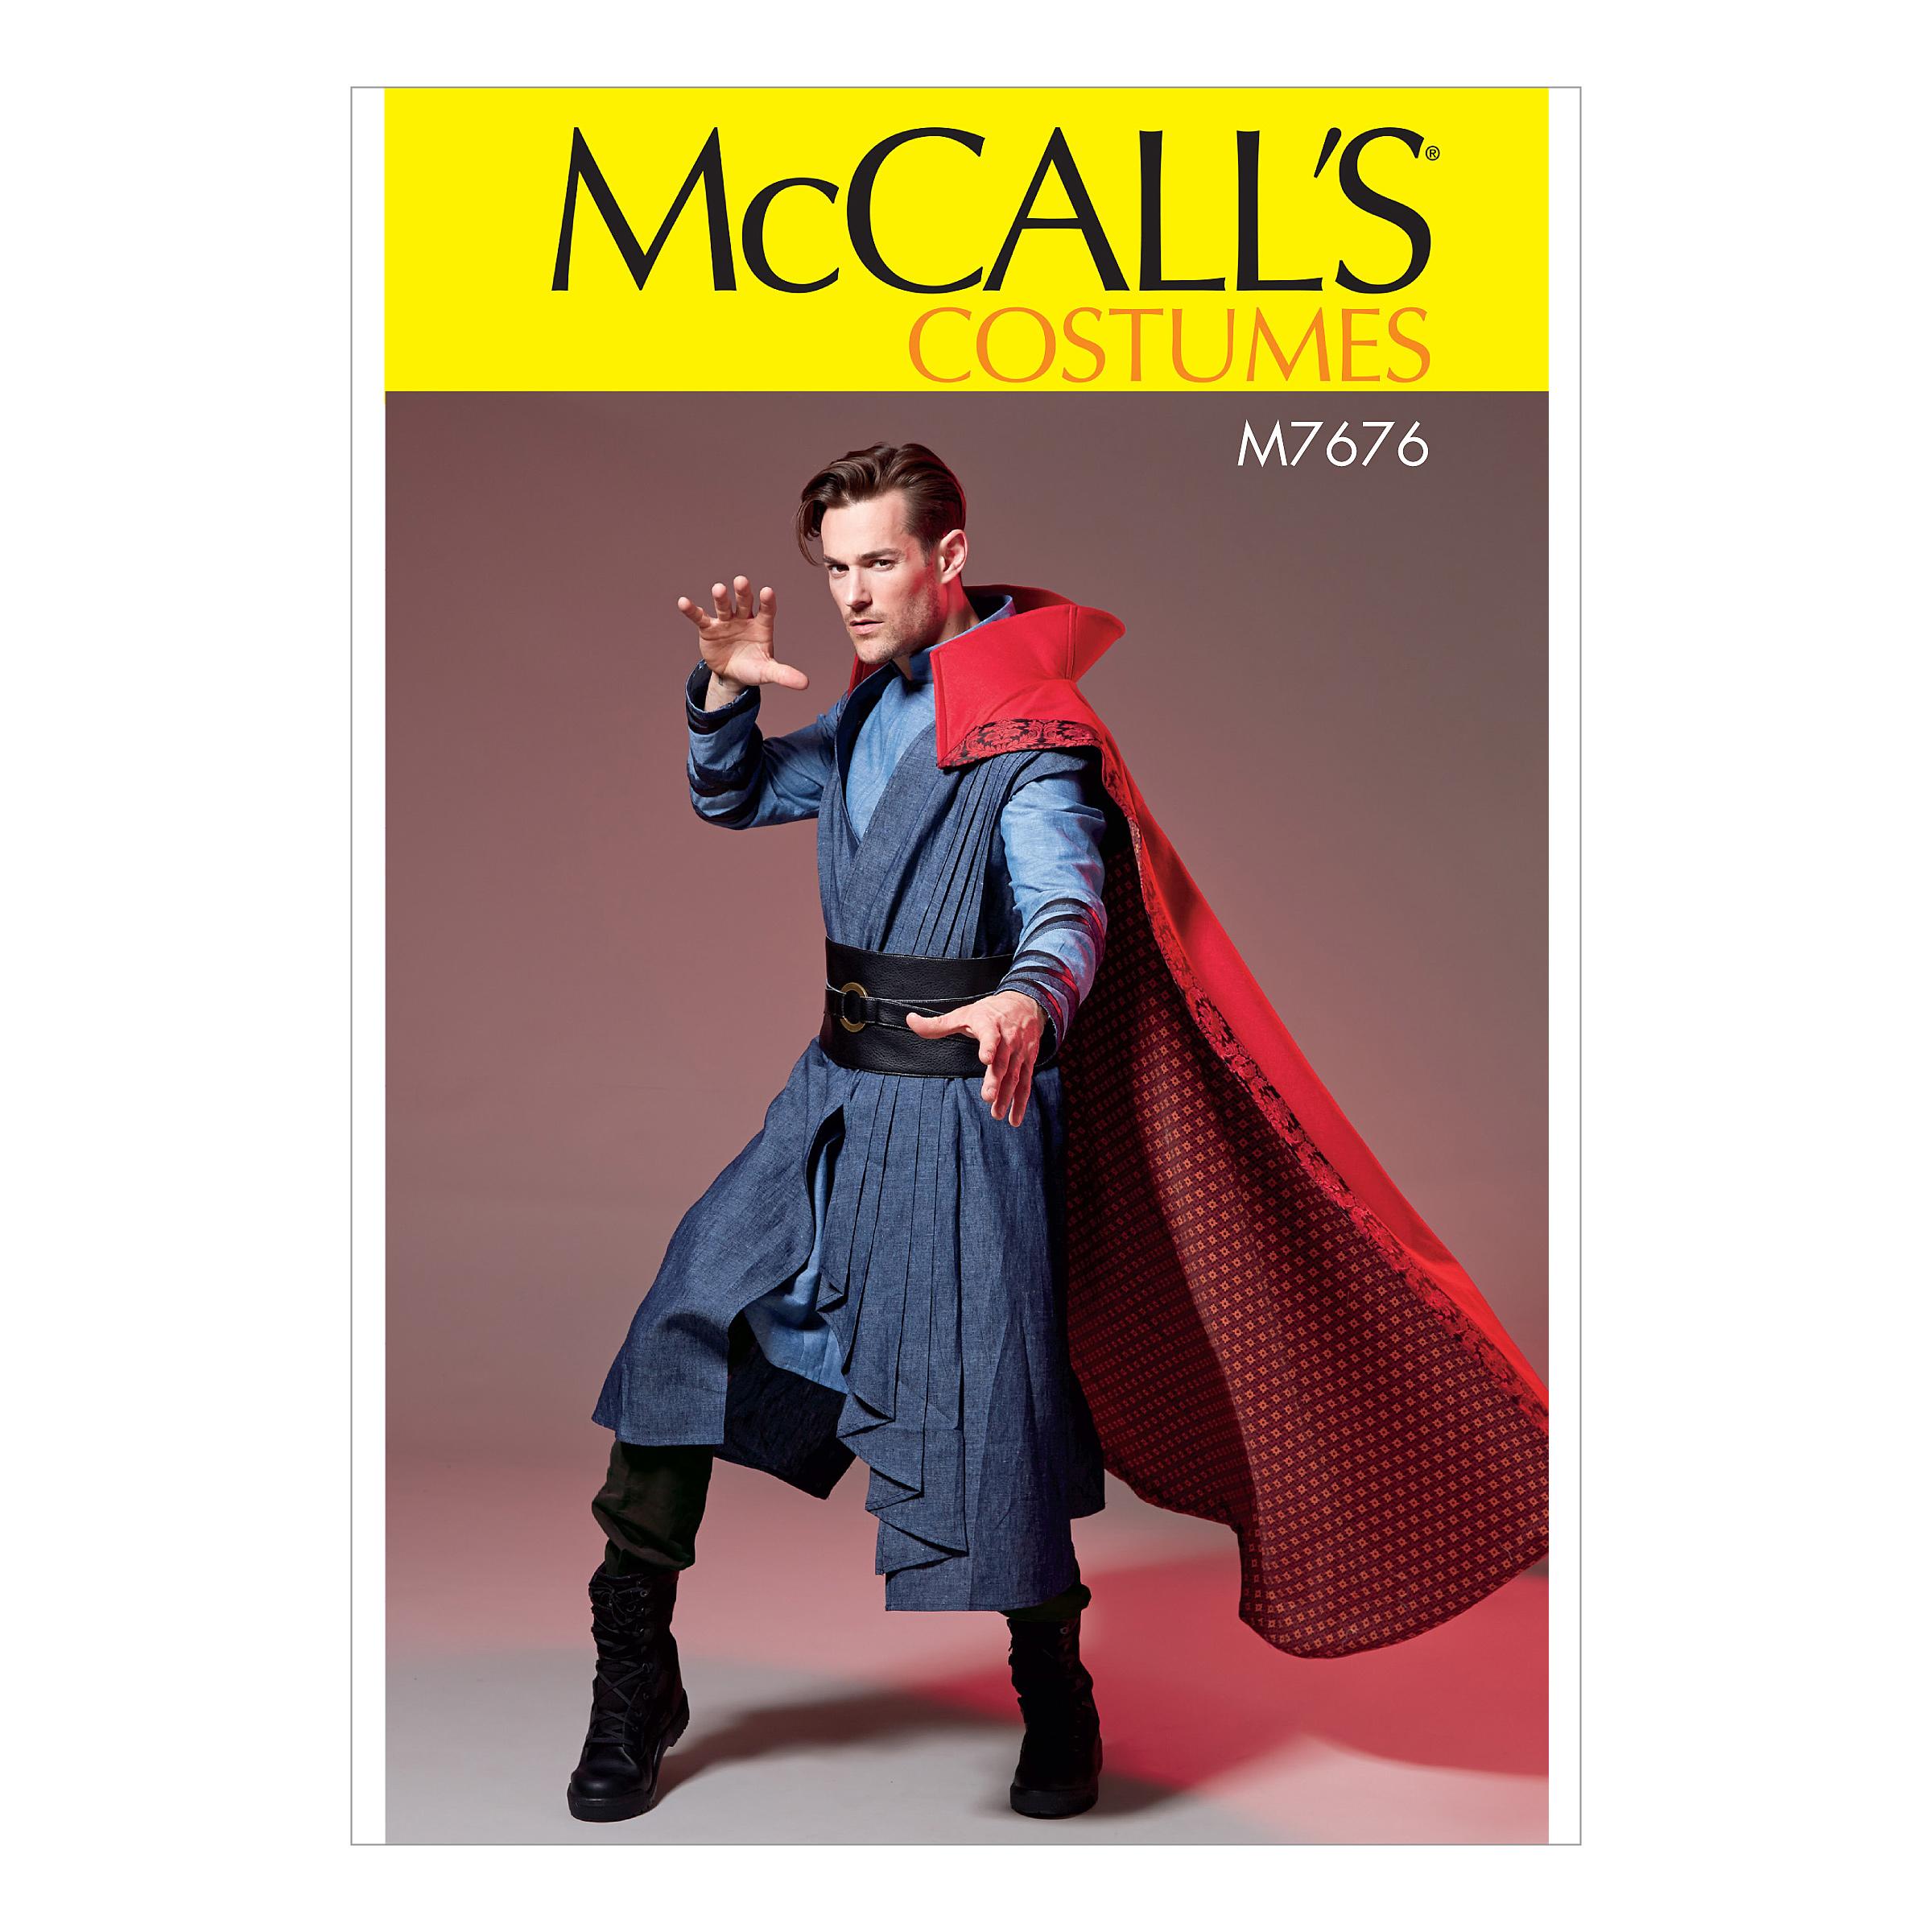 McCalls M7676 Costumes